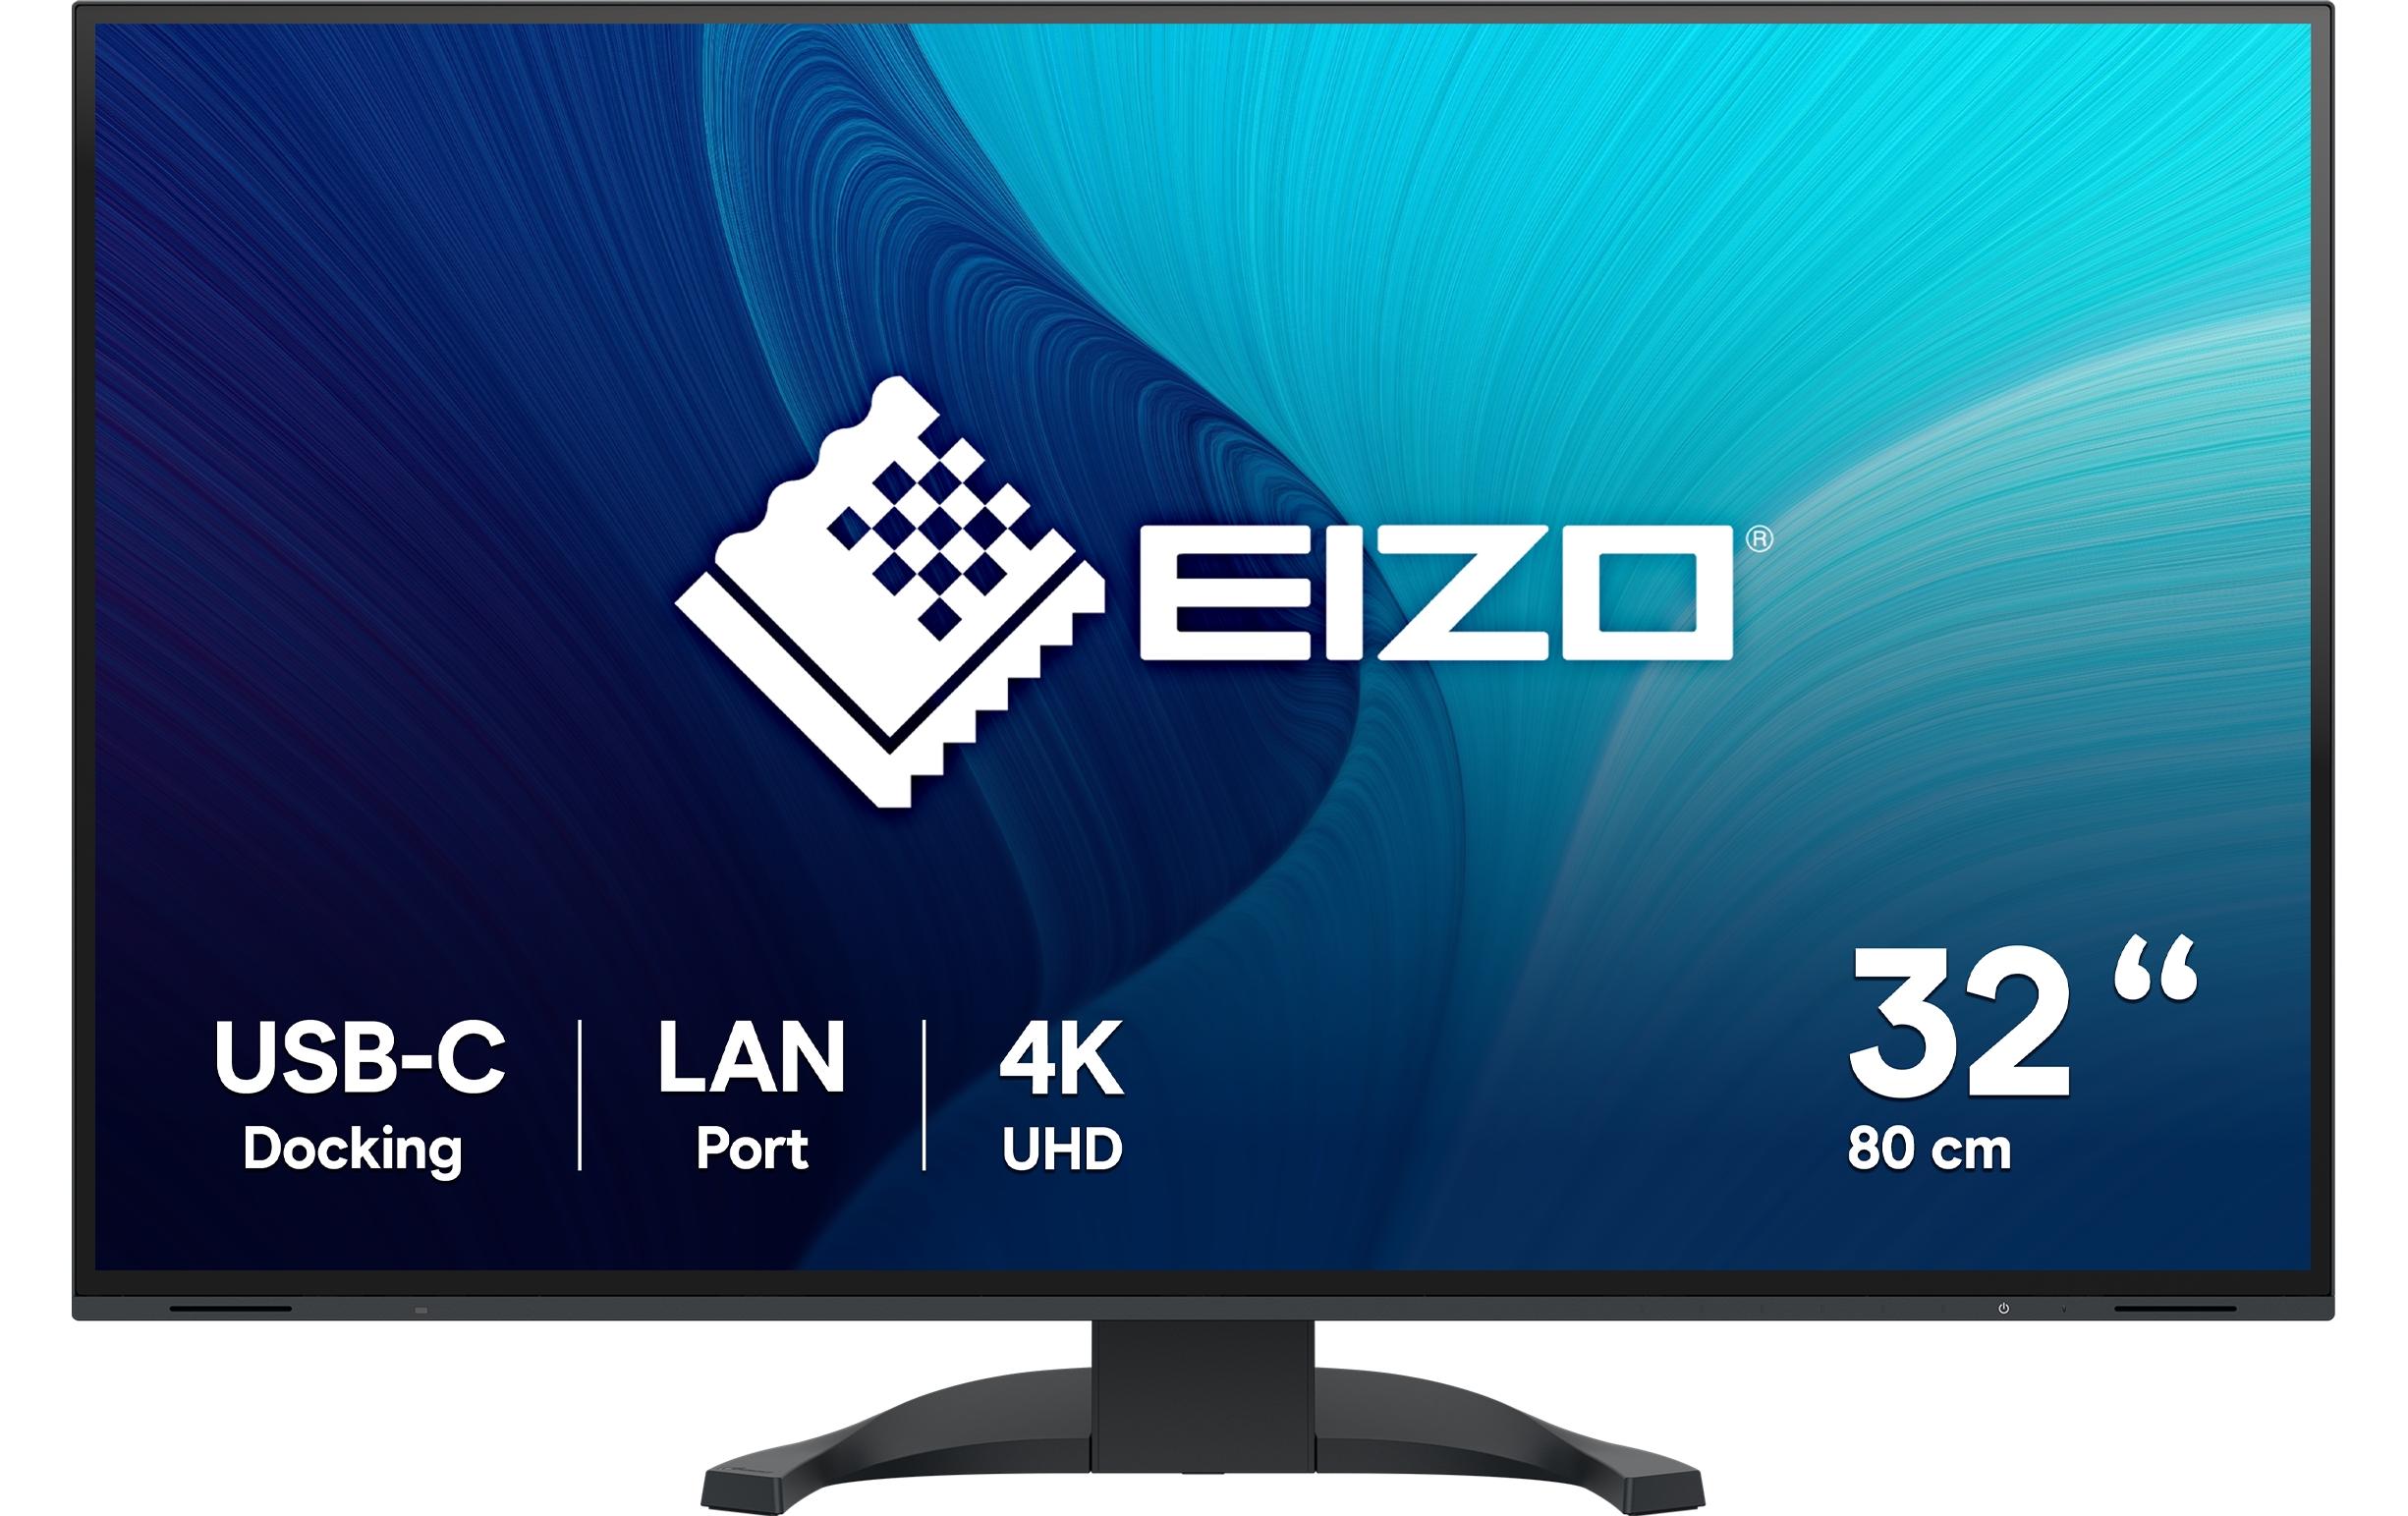 EIZO Monitor FlexScan EV3240X Swiss Edition Schwarz